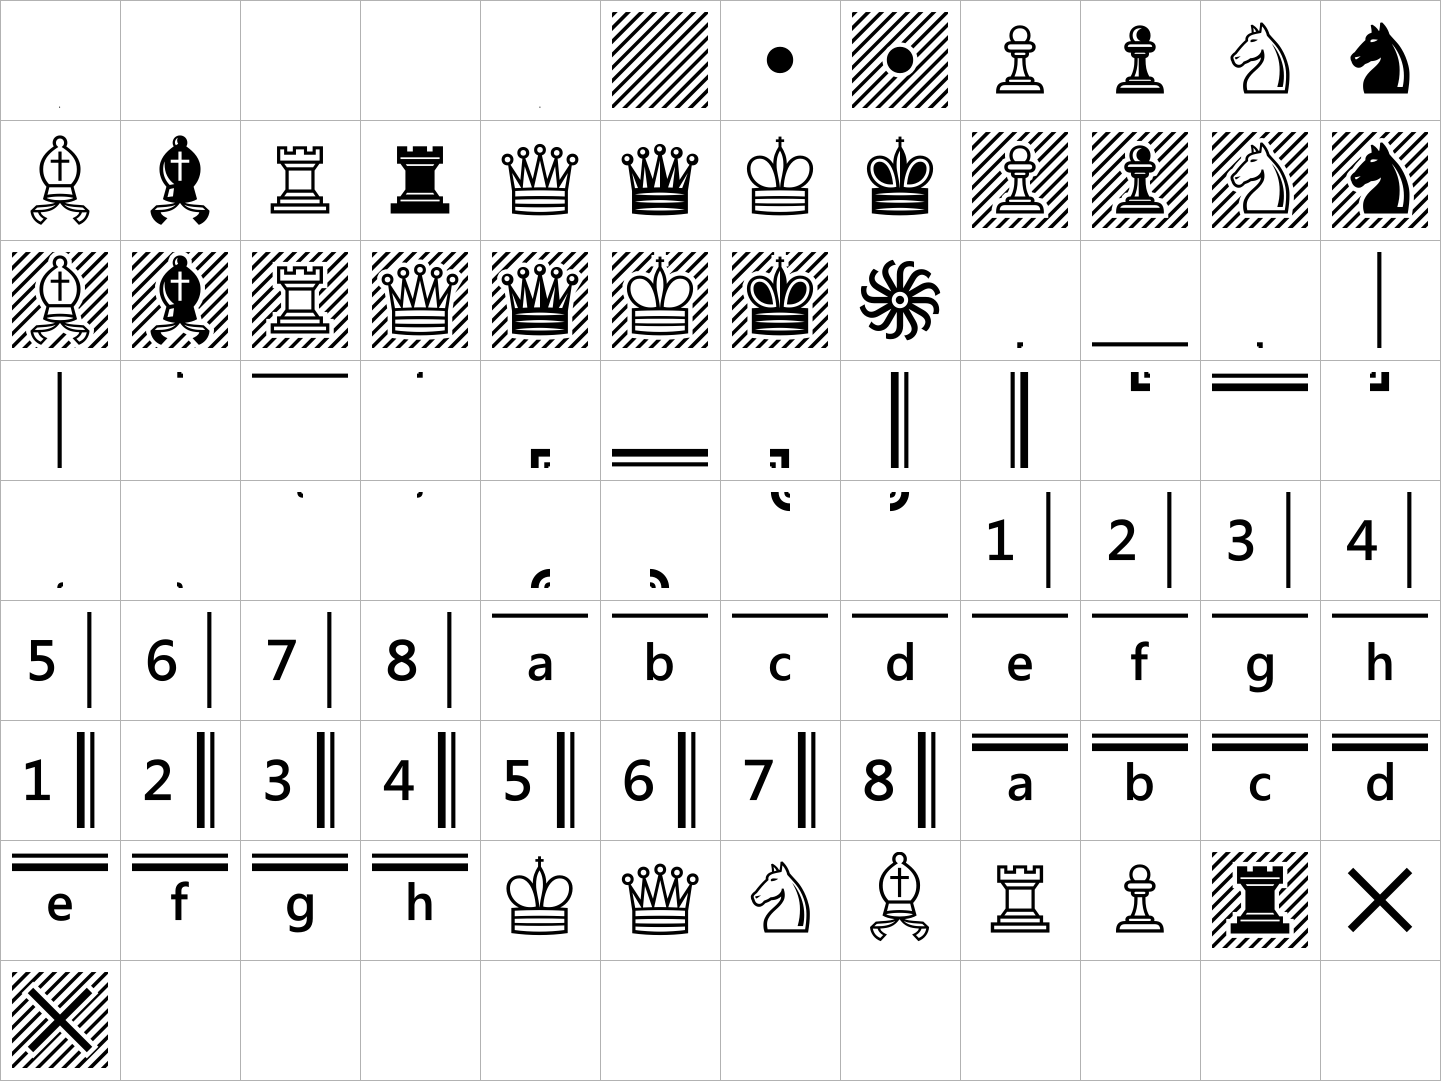 Segoe Chess Regular image